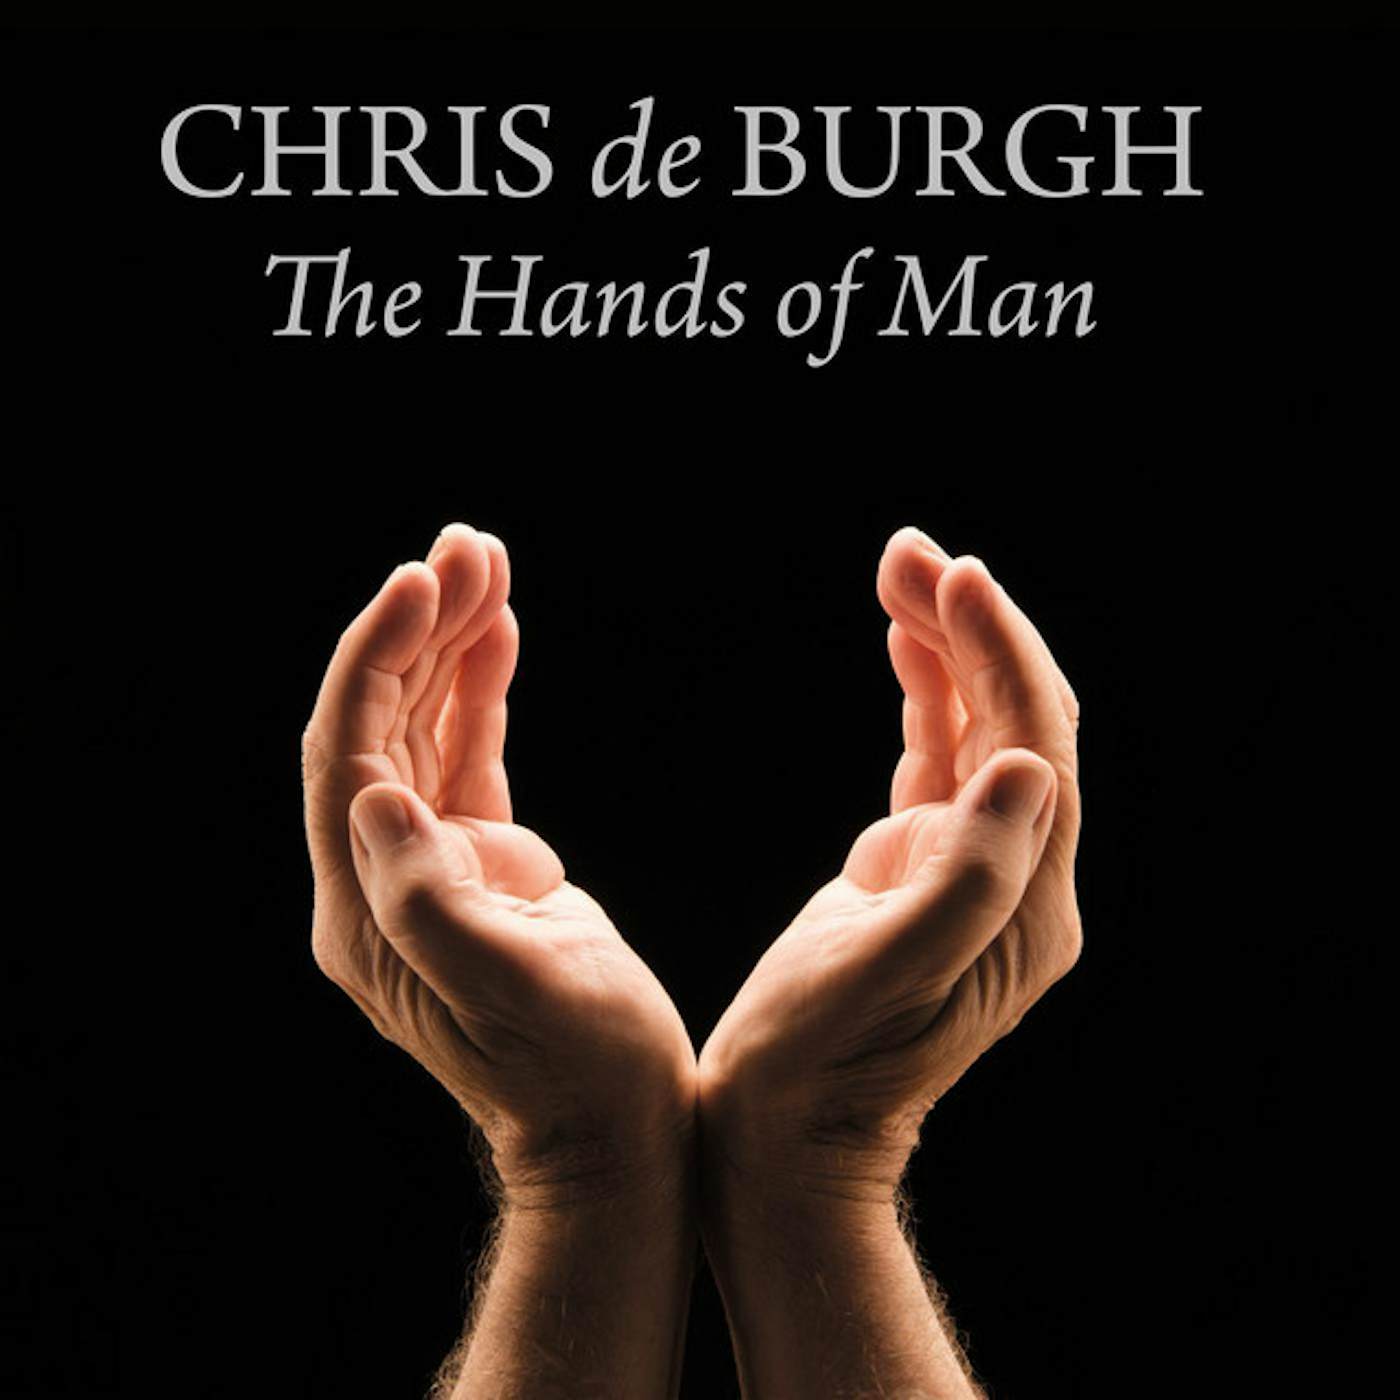 Chris de Burgh HANDS OF MAN CD